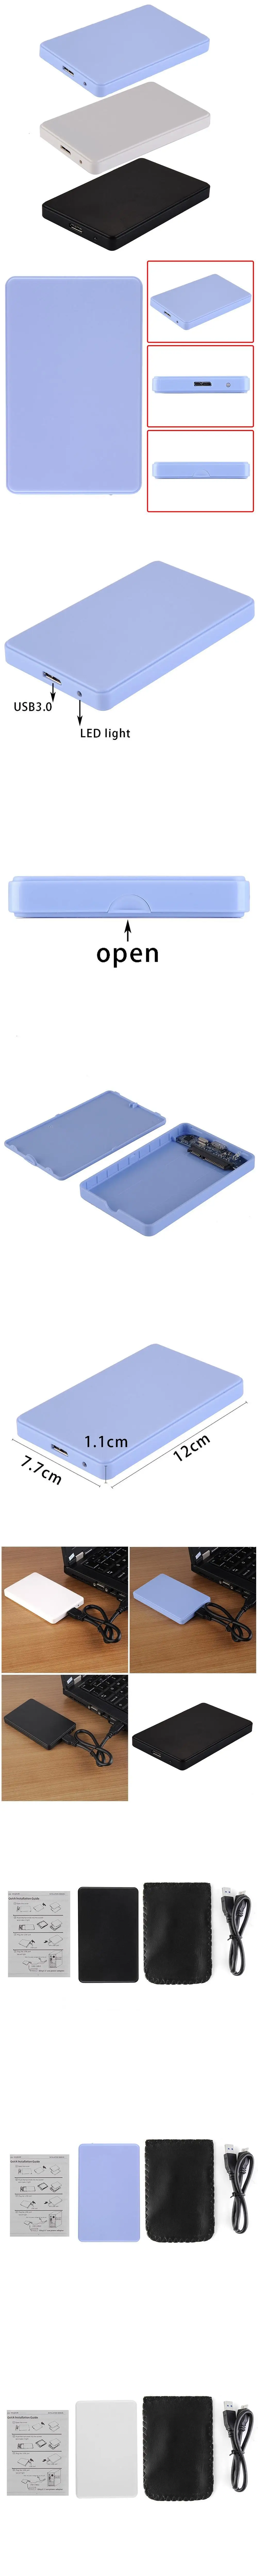 2," USB3.0 HDD внешний корпус 2 ТБ SATA жесткий диск мобильный диск коробка жесткие диски коробка компьютерные аксессуары